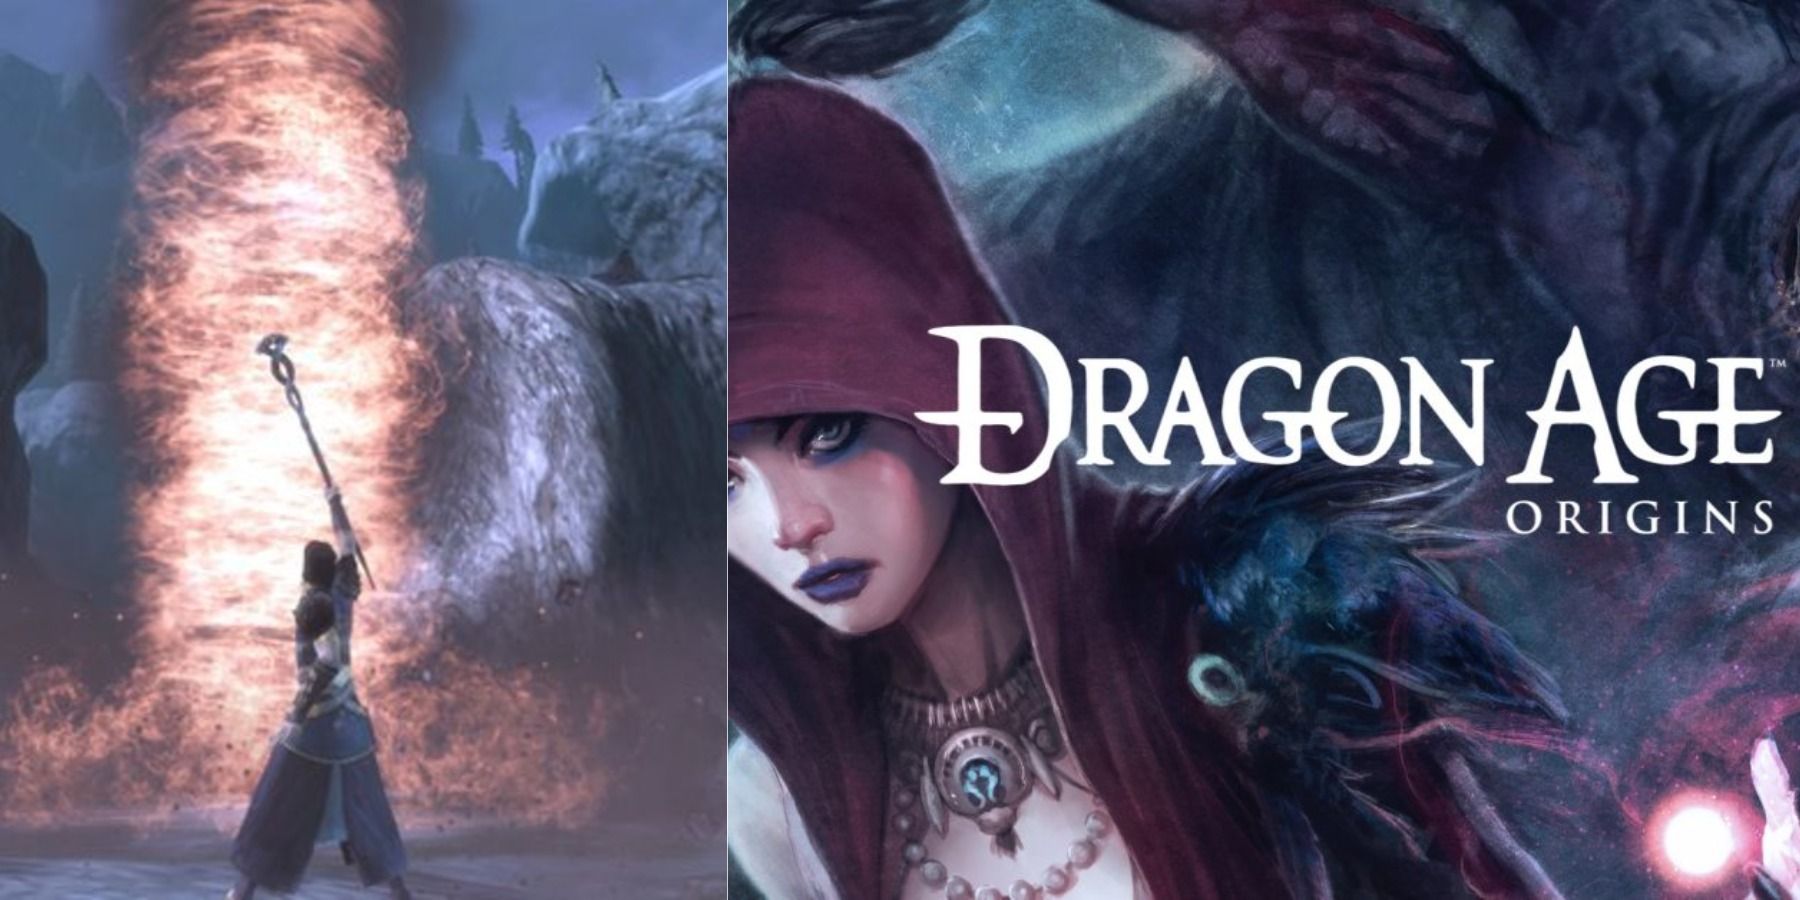 Dragon Age Origins Intro featuring Morrigan